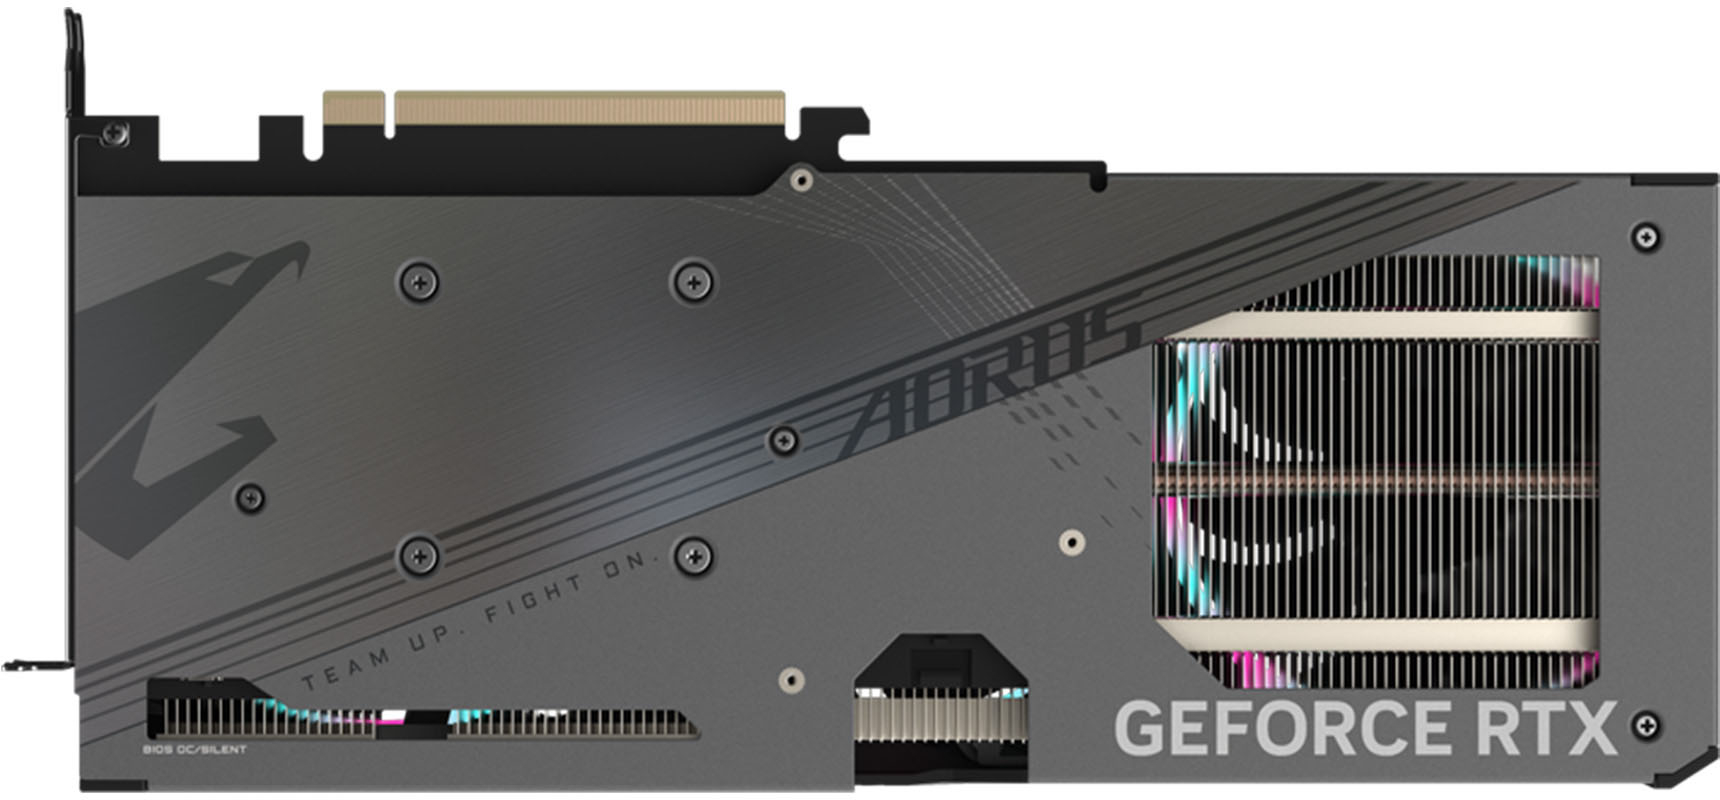 AORUS GeForce RTX™ 4060 Ti ELITE 8G｜AORUS - GIGABYTE USA